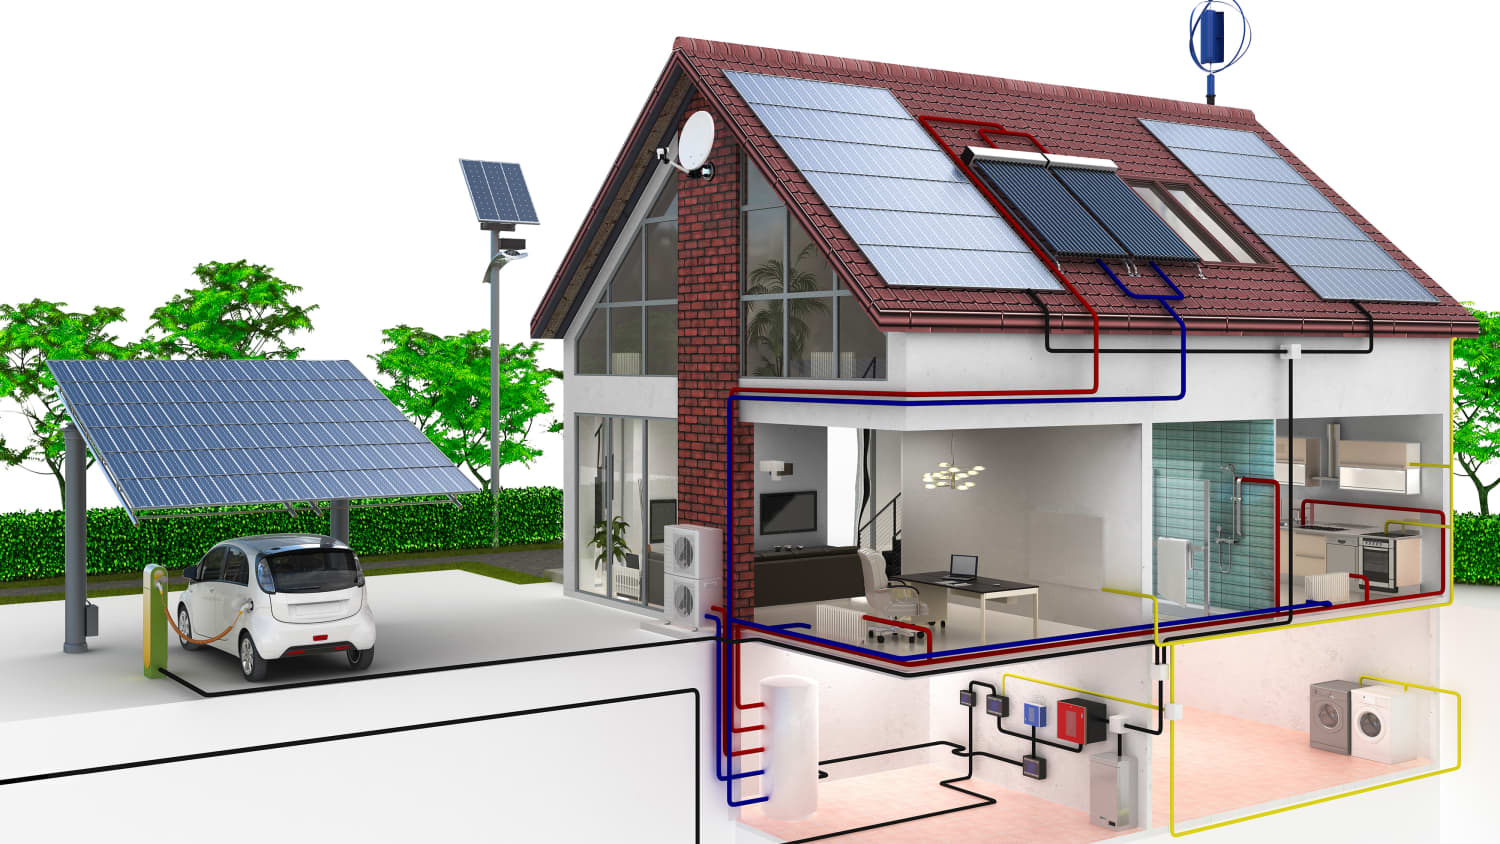 Solarbatterie für Klein-PV-Anlagen